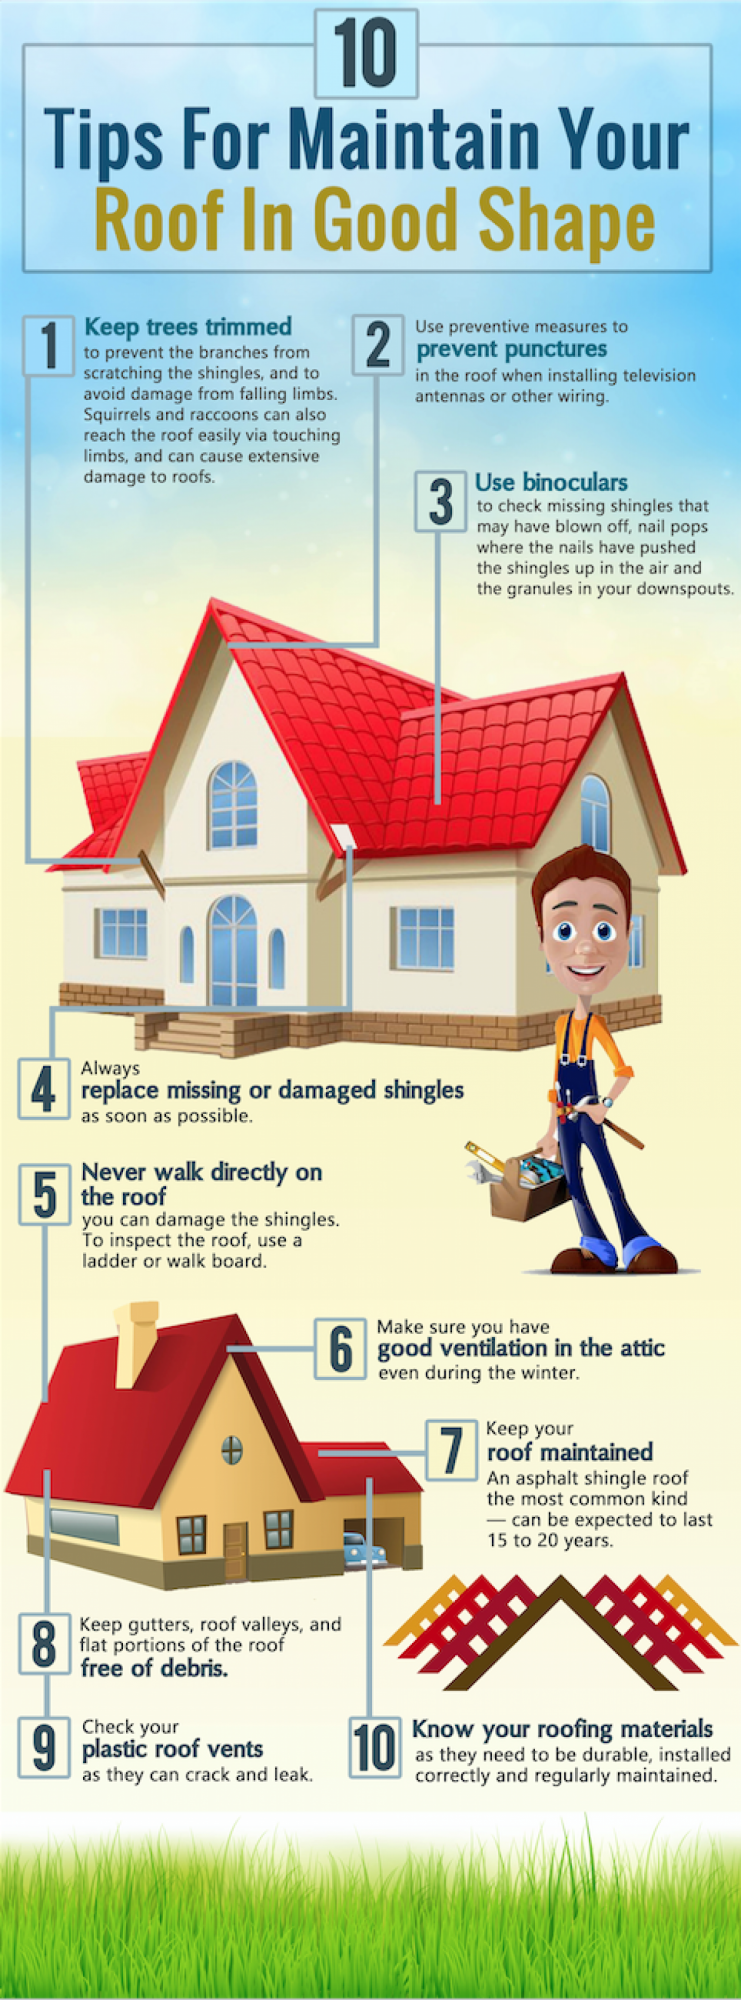 roof repair tips